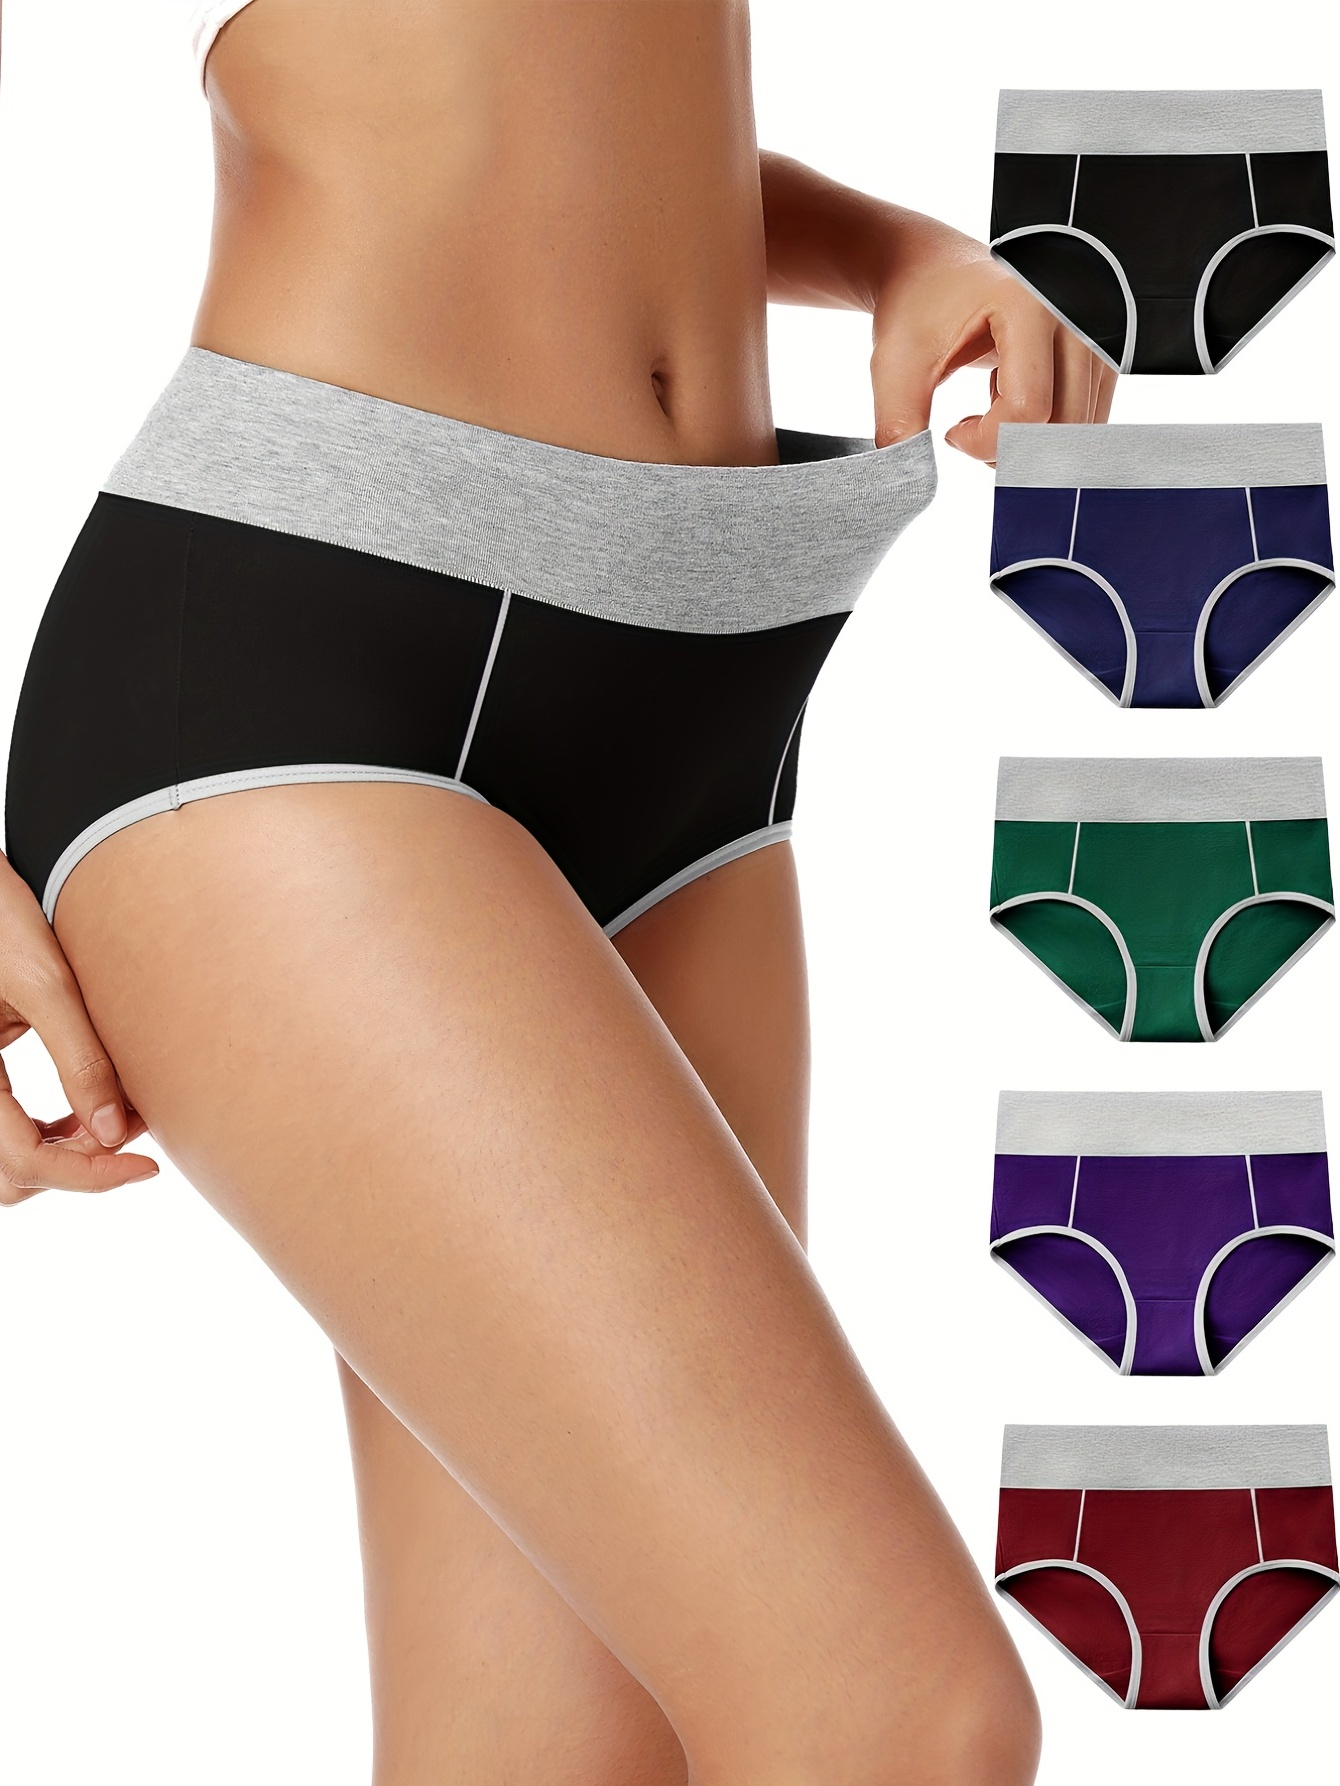 5pcs one pack Women's High Waist Cotton Panties Briefs Soft Breathable  Comfy Underwear Plus Size M-XL 